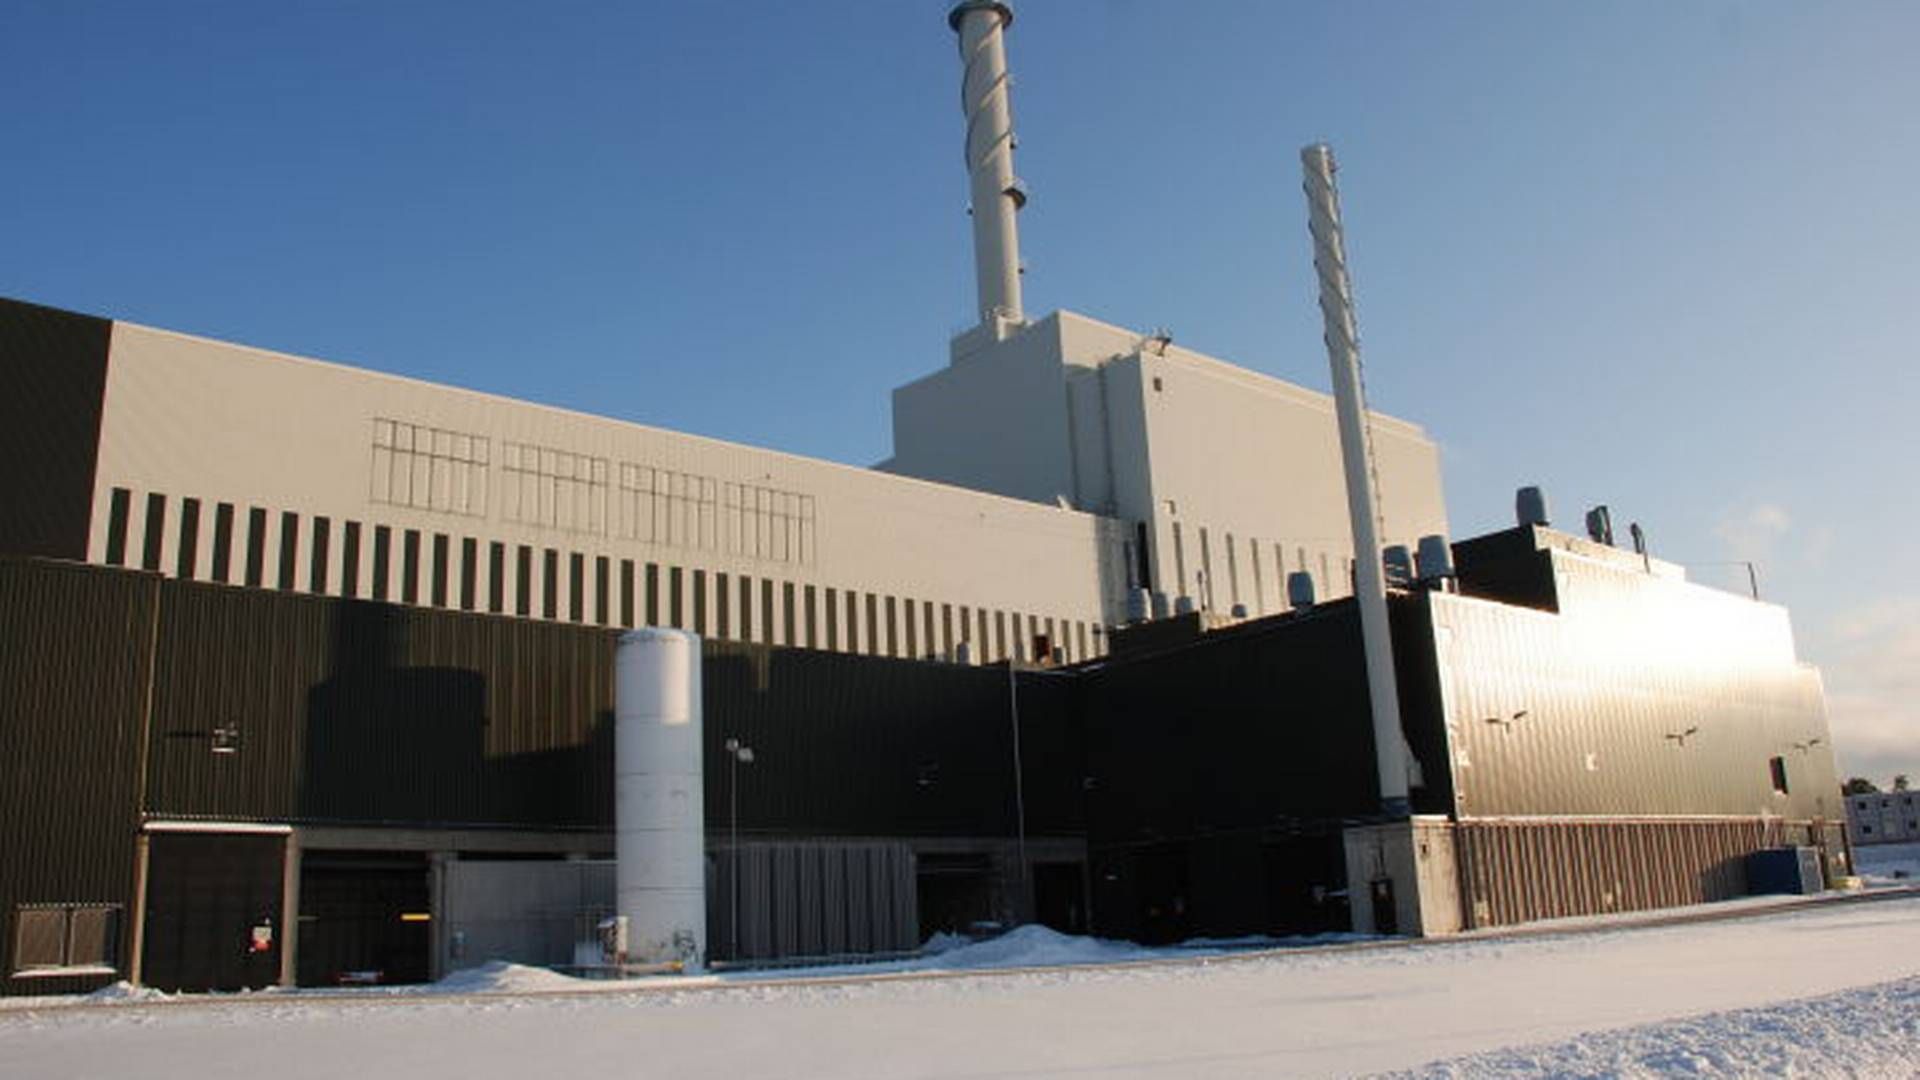 FRYKTER EFFEKTKRISE: Vedlikehold på kjernekraften kombinert med kaldt vær og lite vind, skaper bekymring for at det kan bli strøm-utkobling i Sør-Sverige. Det vil i så fall kunne gi skyhøye strømpriser. | Foto: OKG